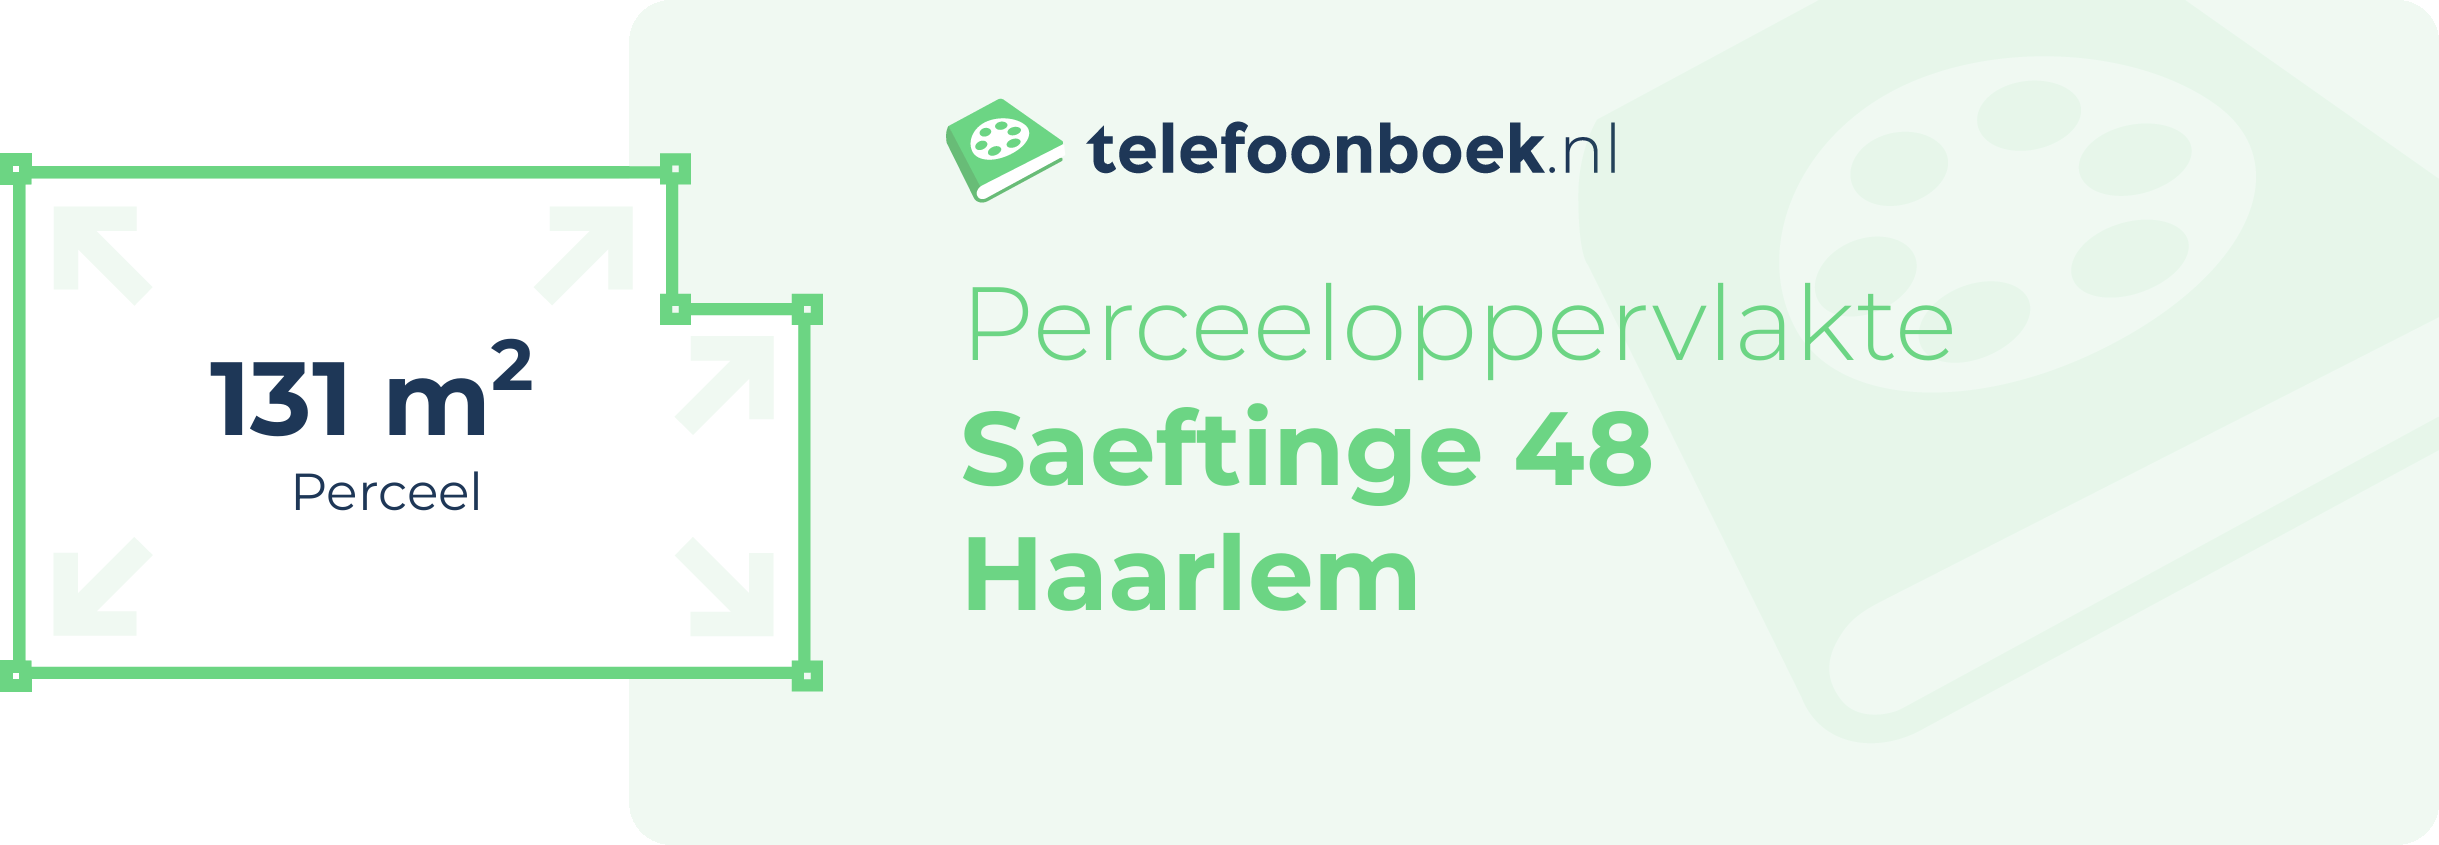 Perceeloppervlakte Saeftinge 48 Haarlem